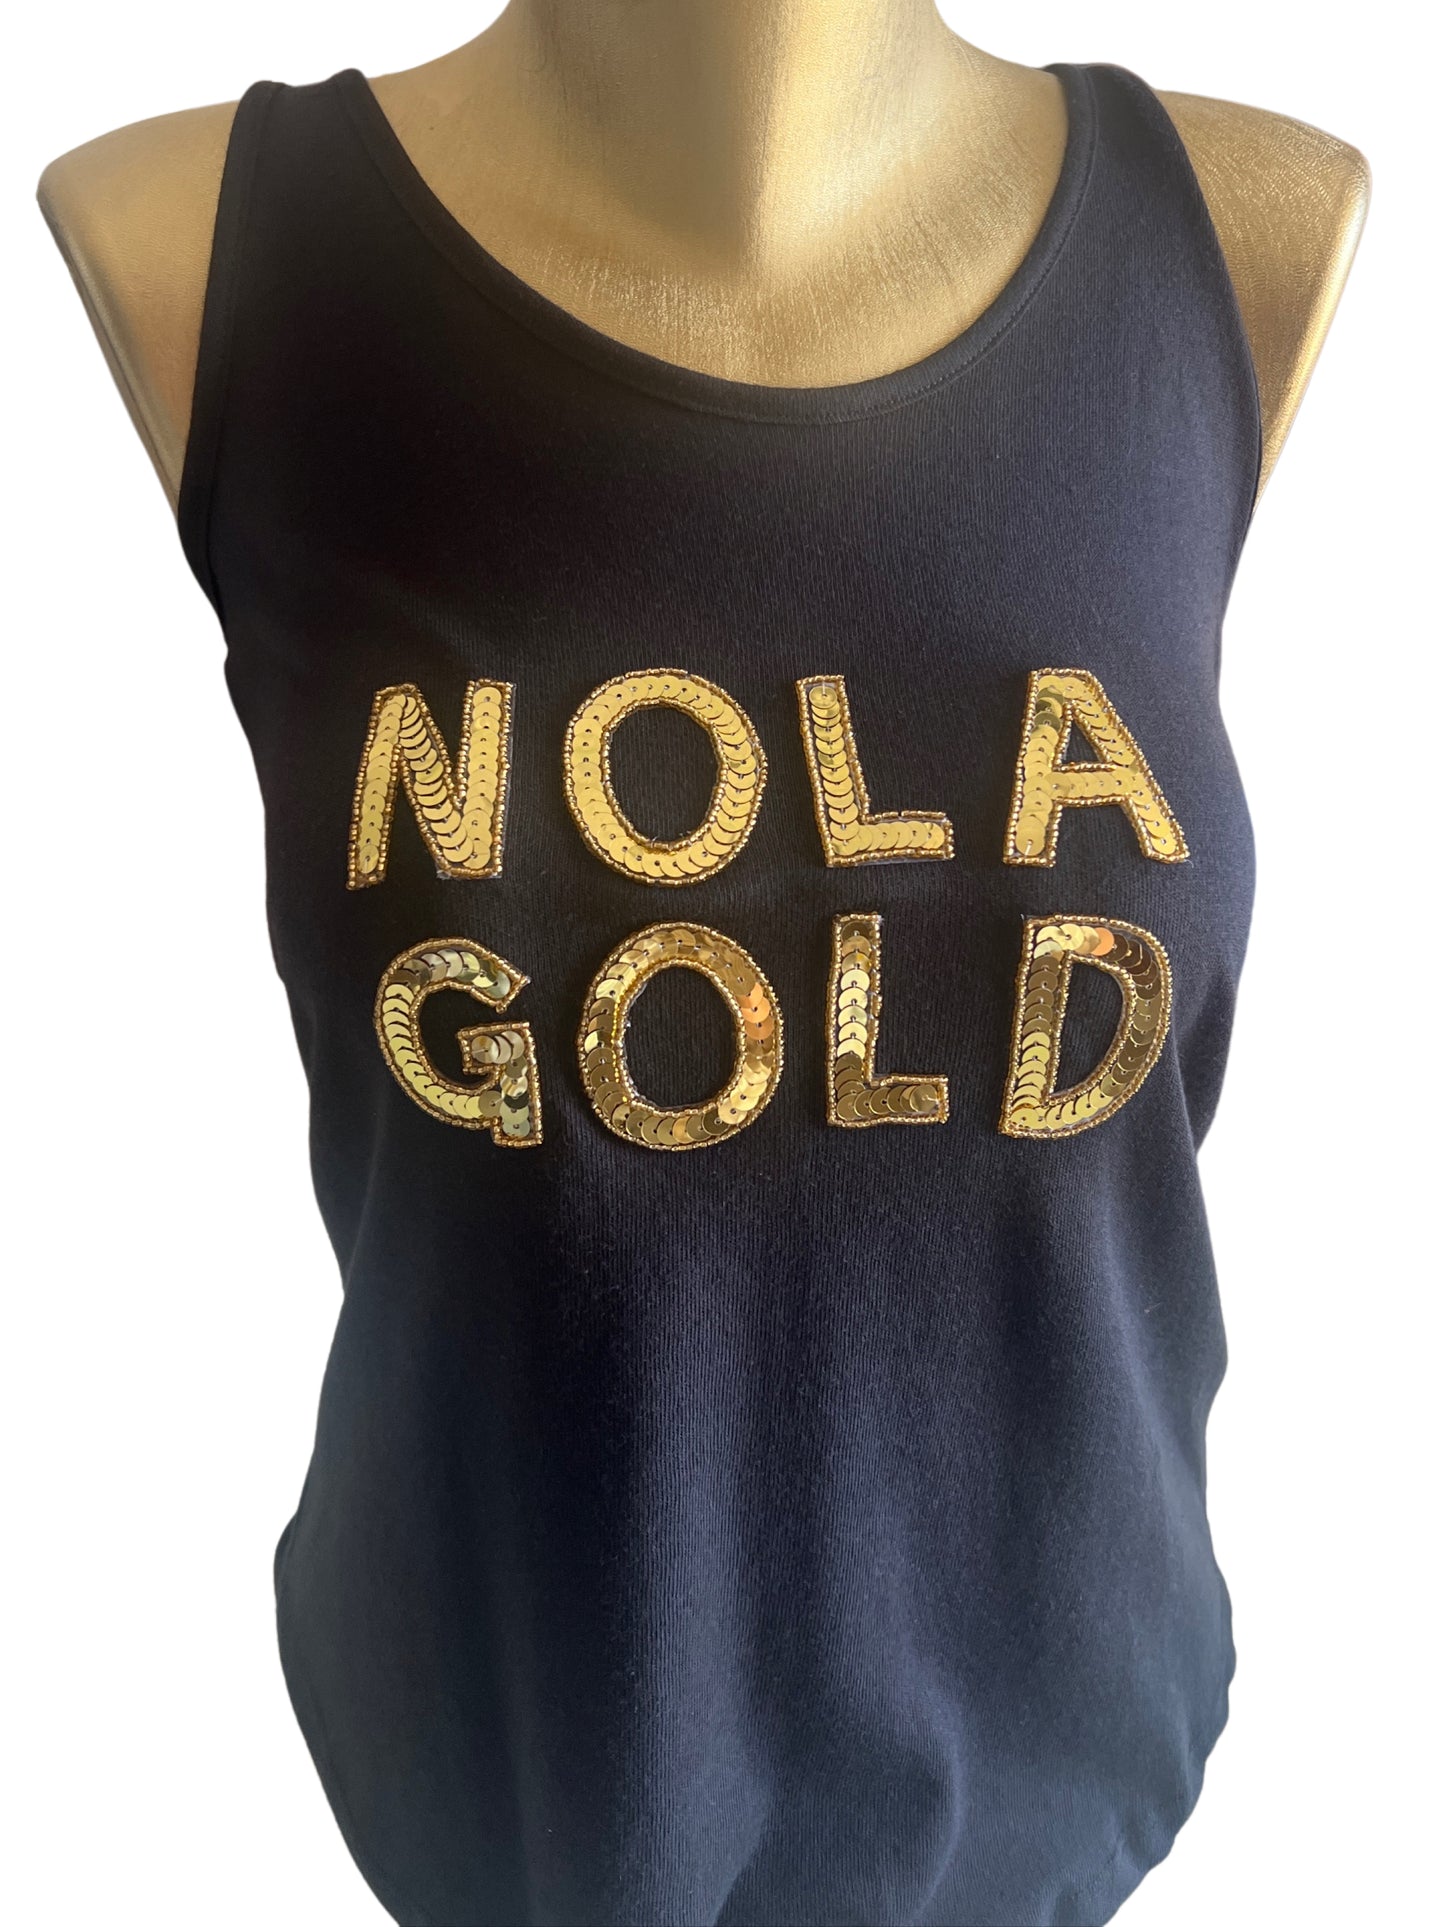 Nola Gold Ladies Sequin Black Tank